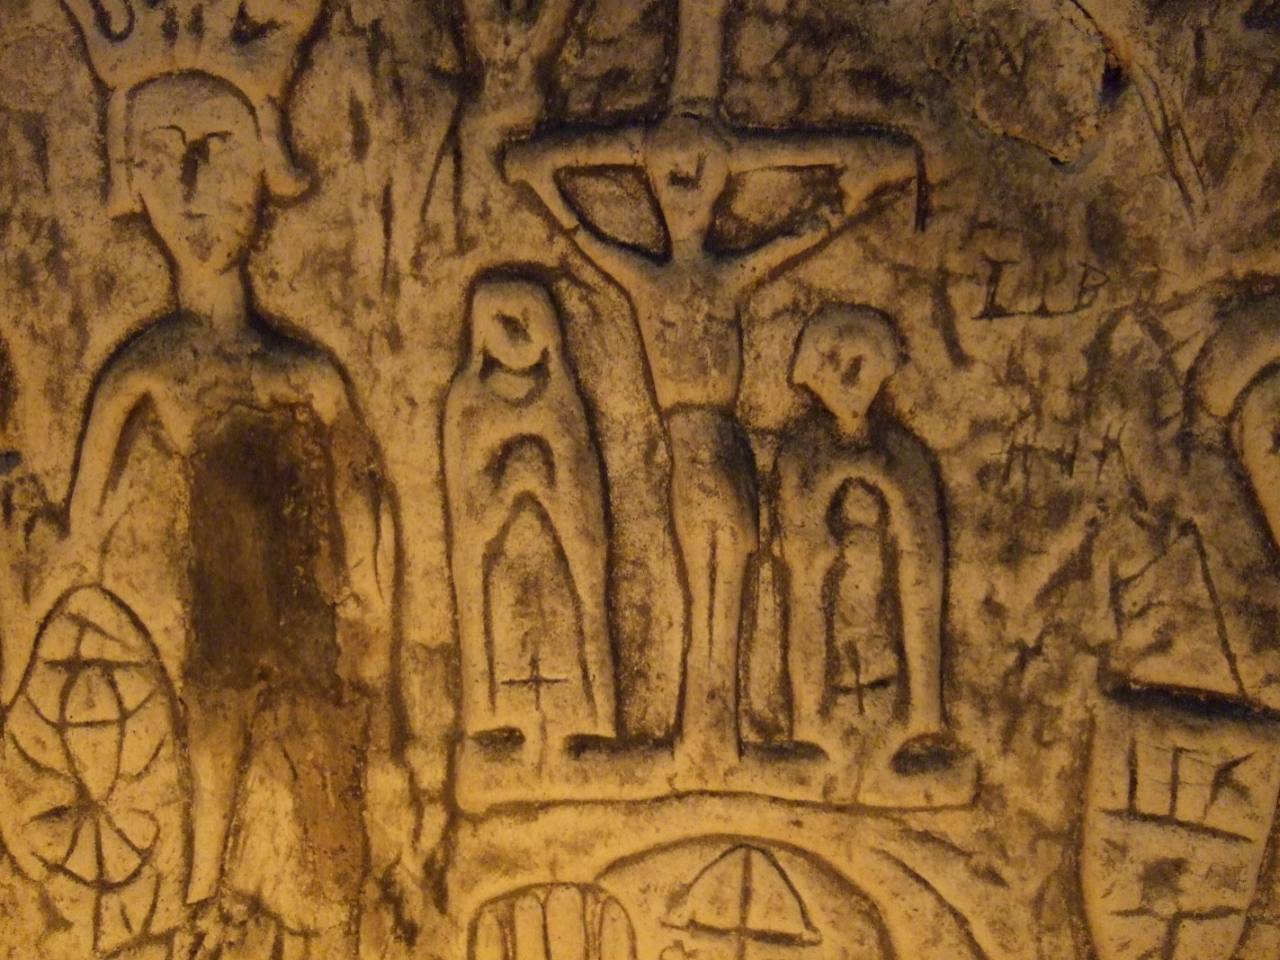 Simbole dhe gdhendje misterioze në shpellën Royston 5 të krijuar nga njeriu